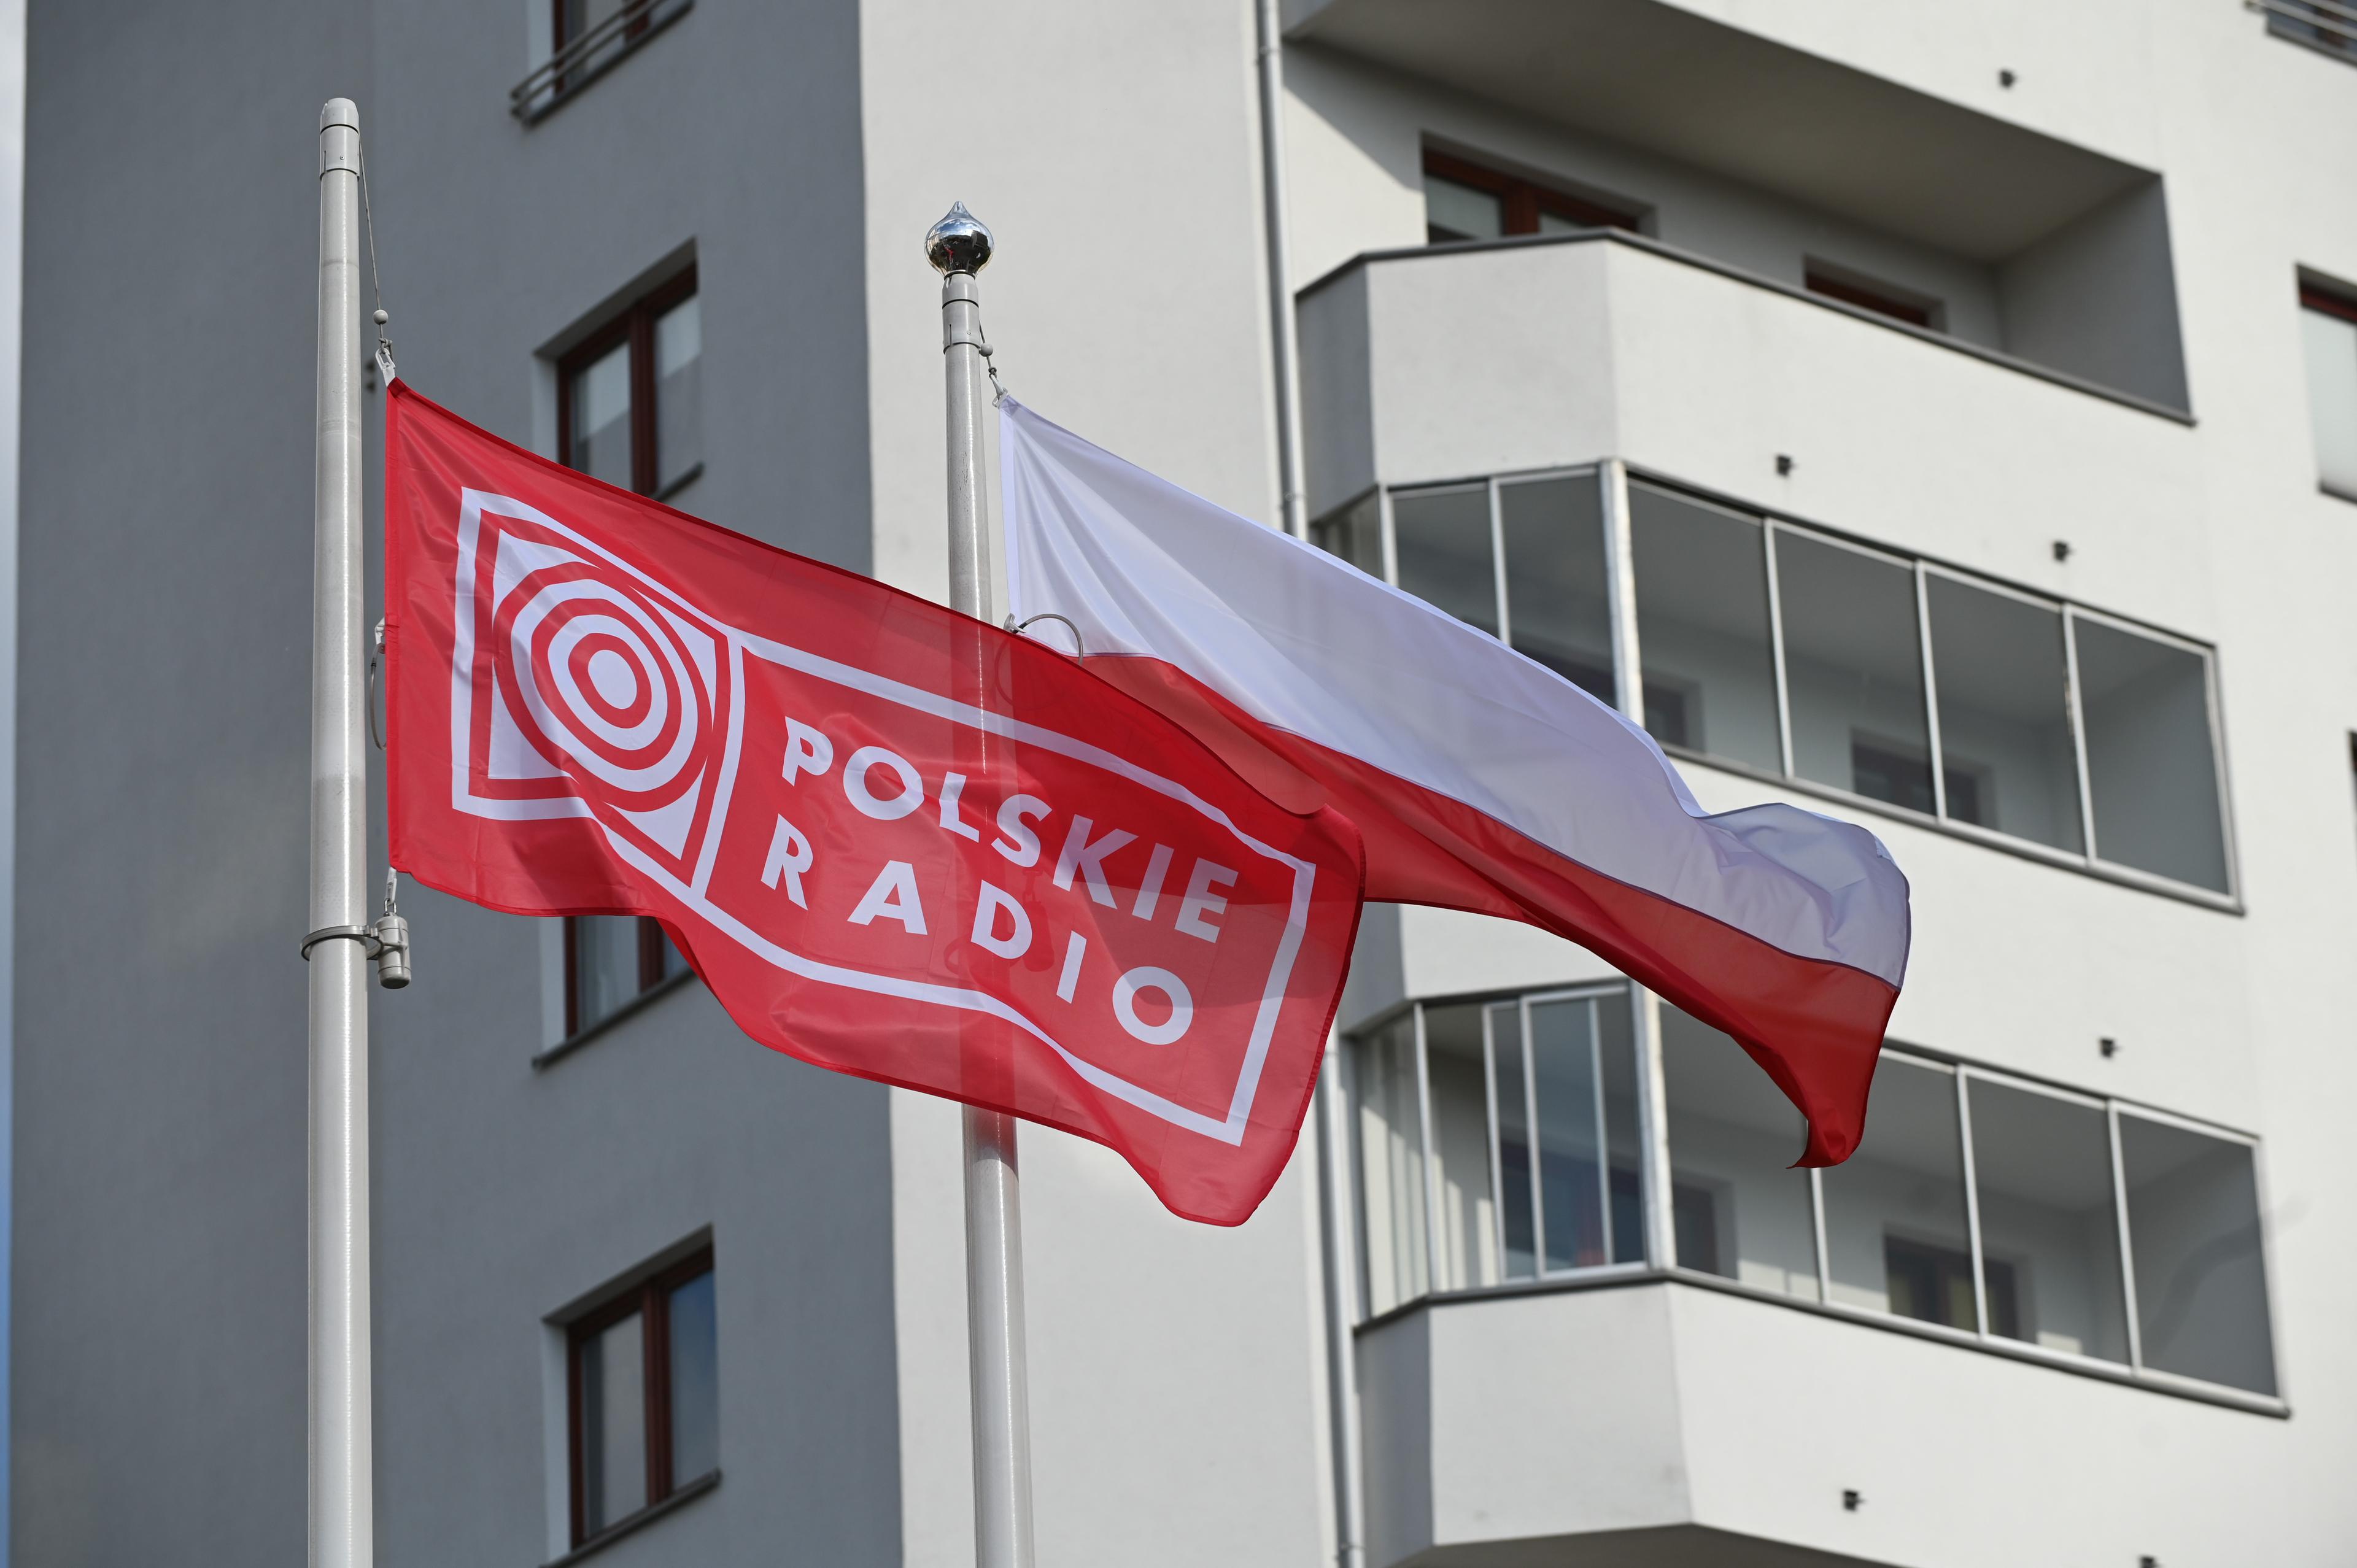 Polskie Radio było współorganizatorem koncertu "Matki Matkom"